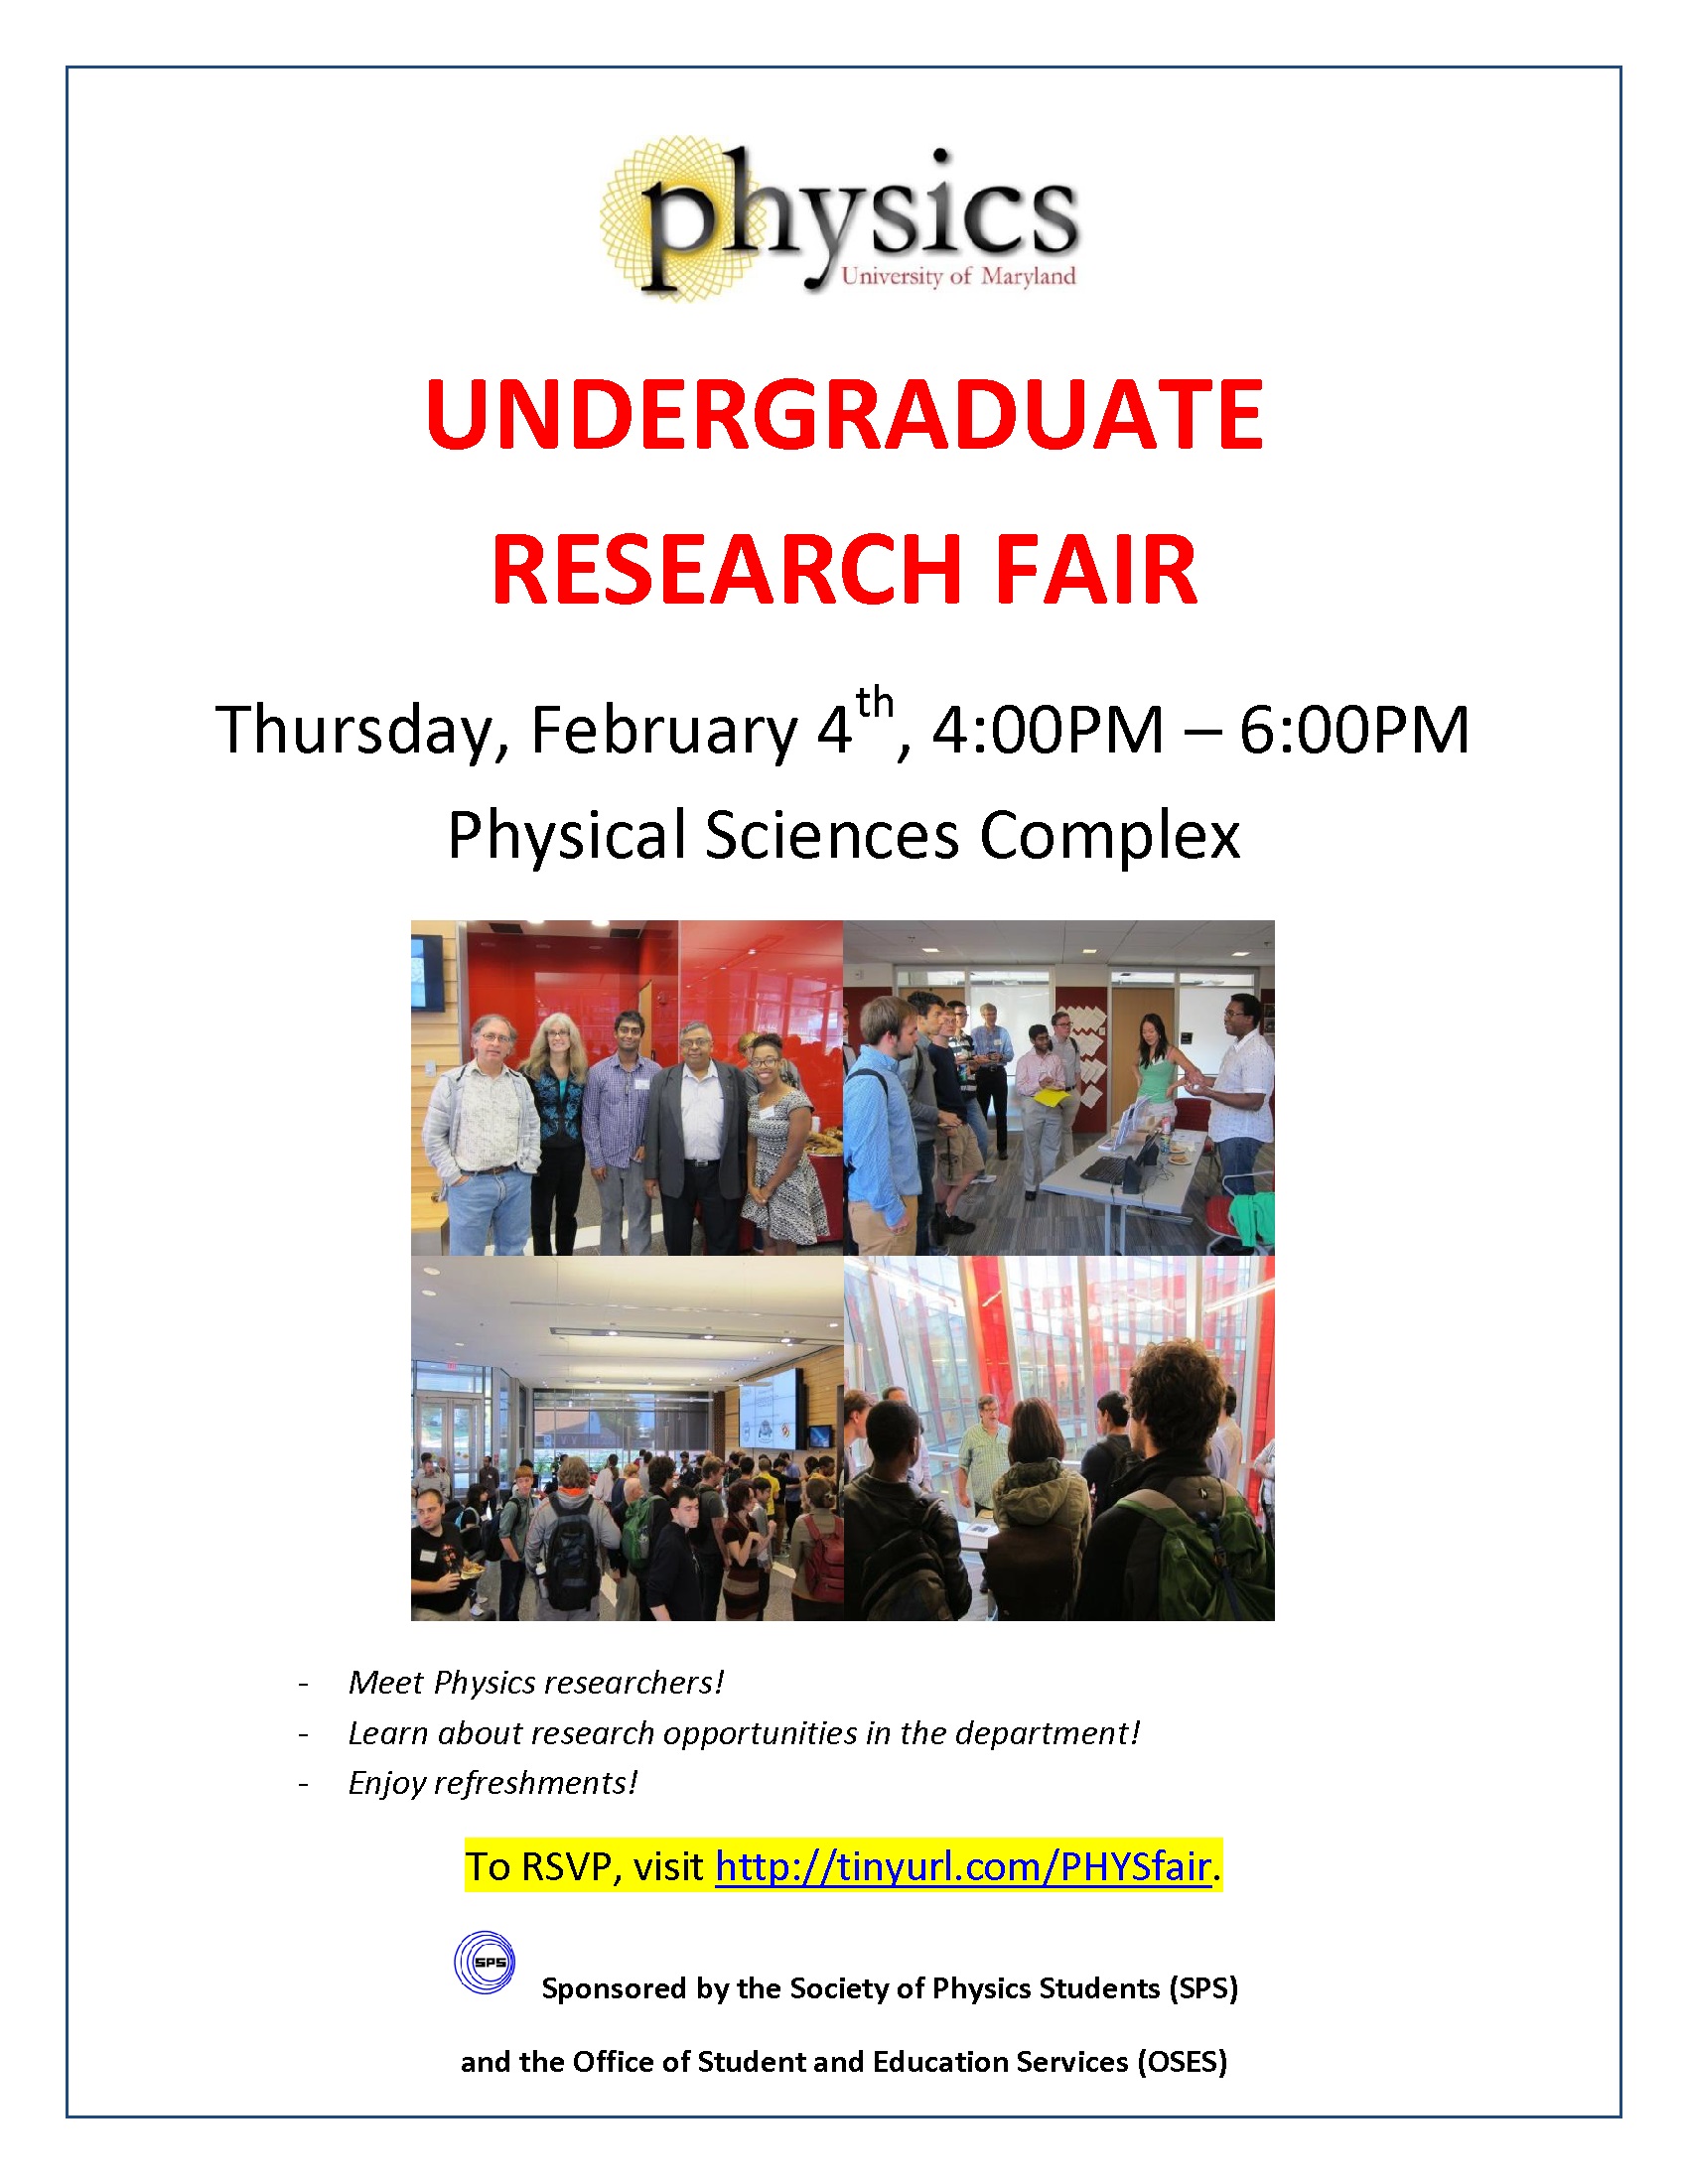 Undergraduate Research Fair Flyer